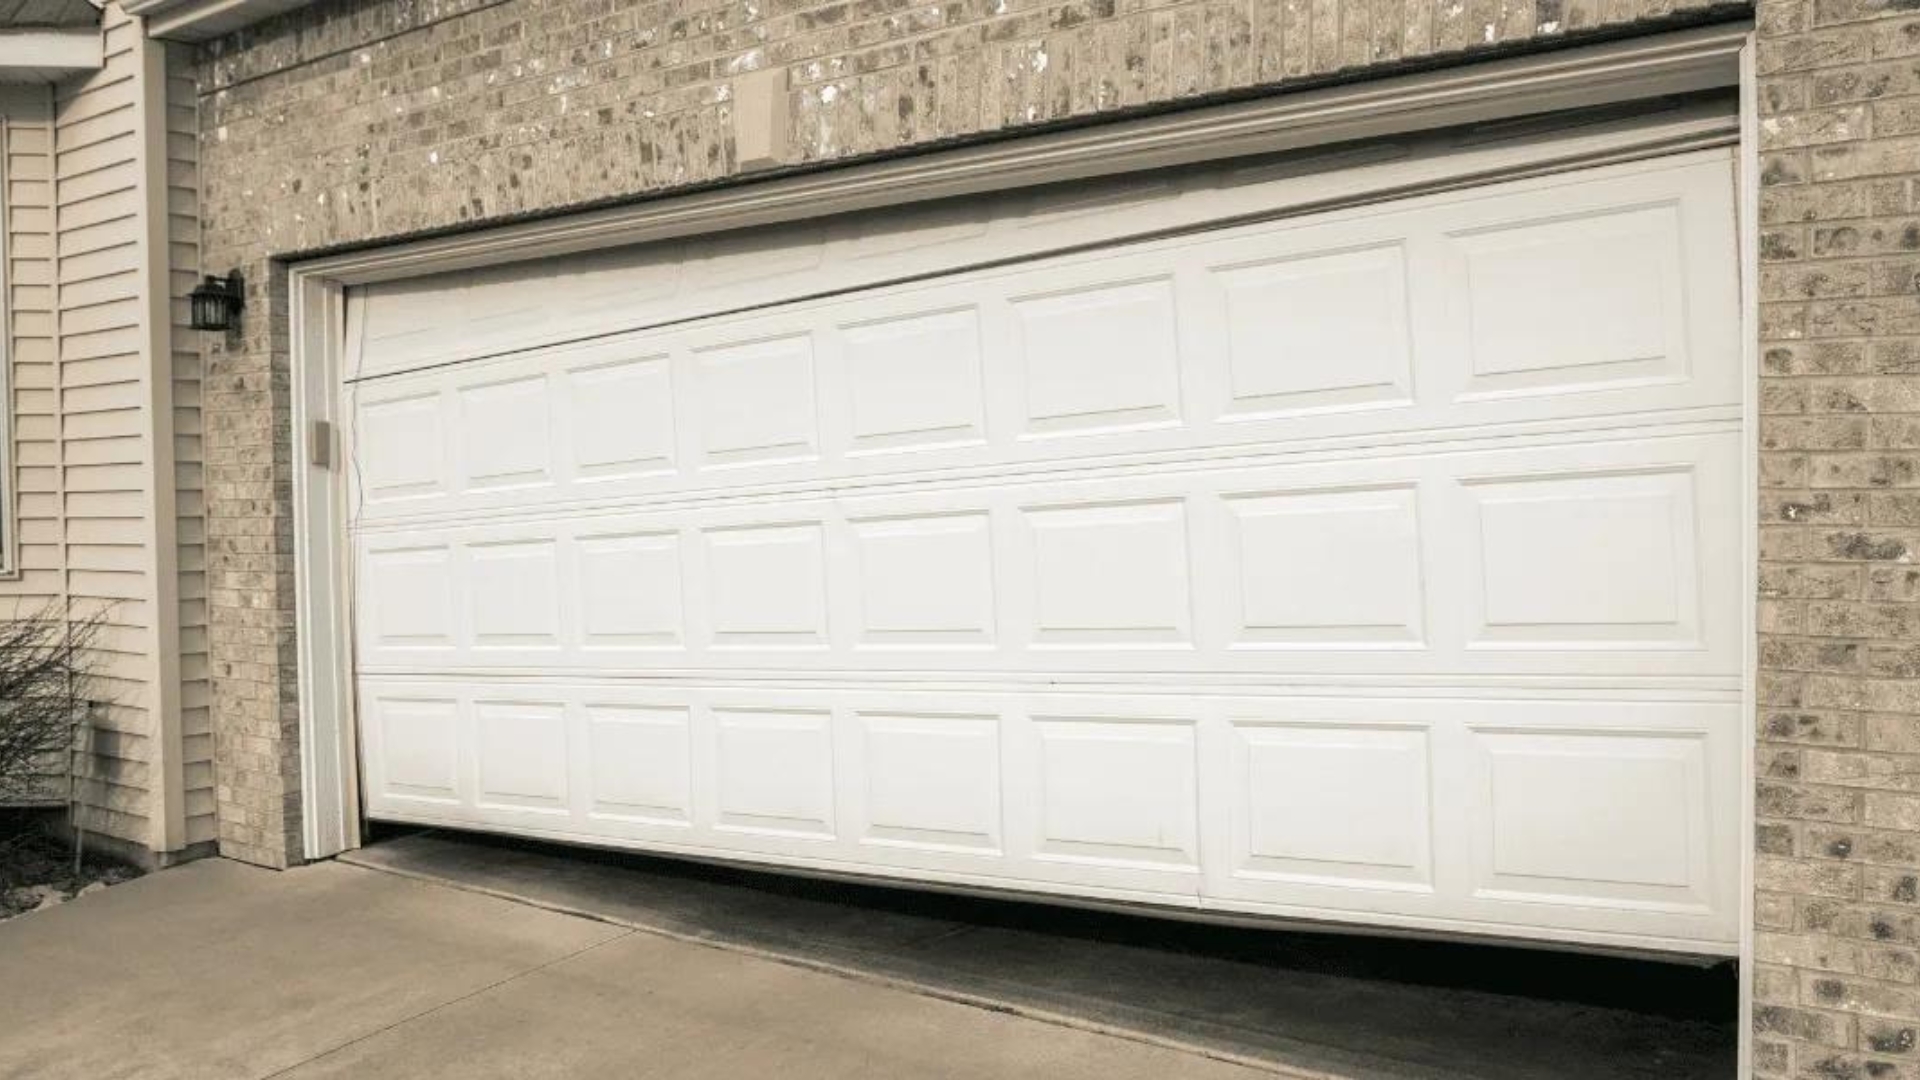 A misaligned garage door